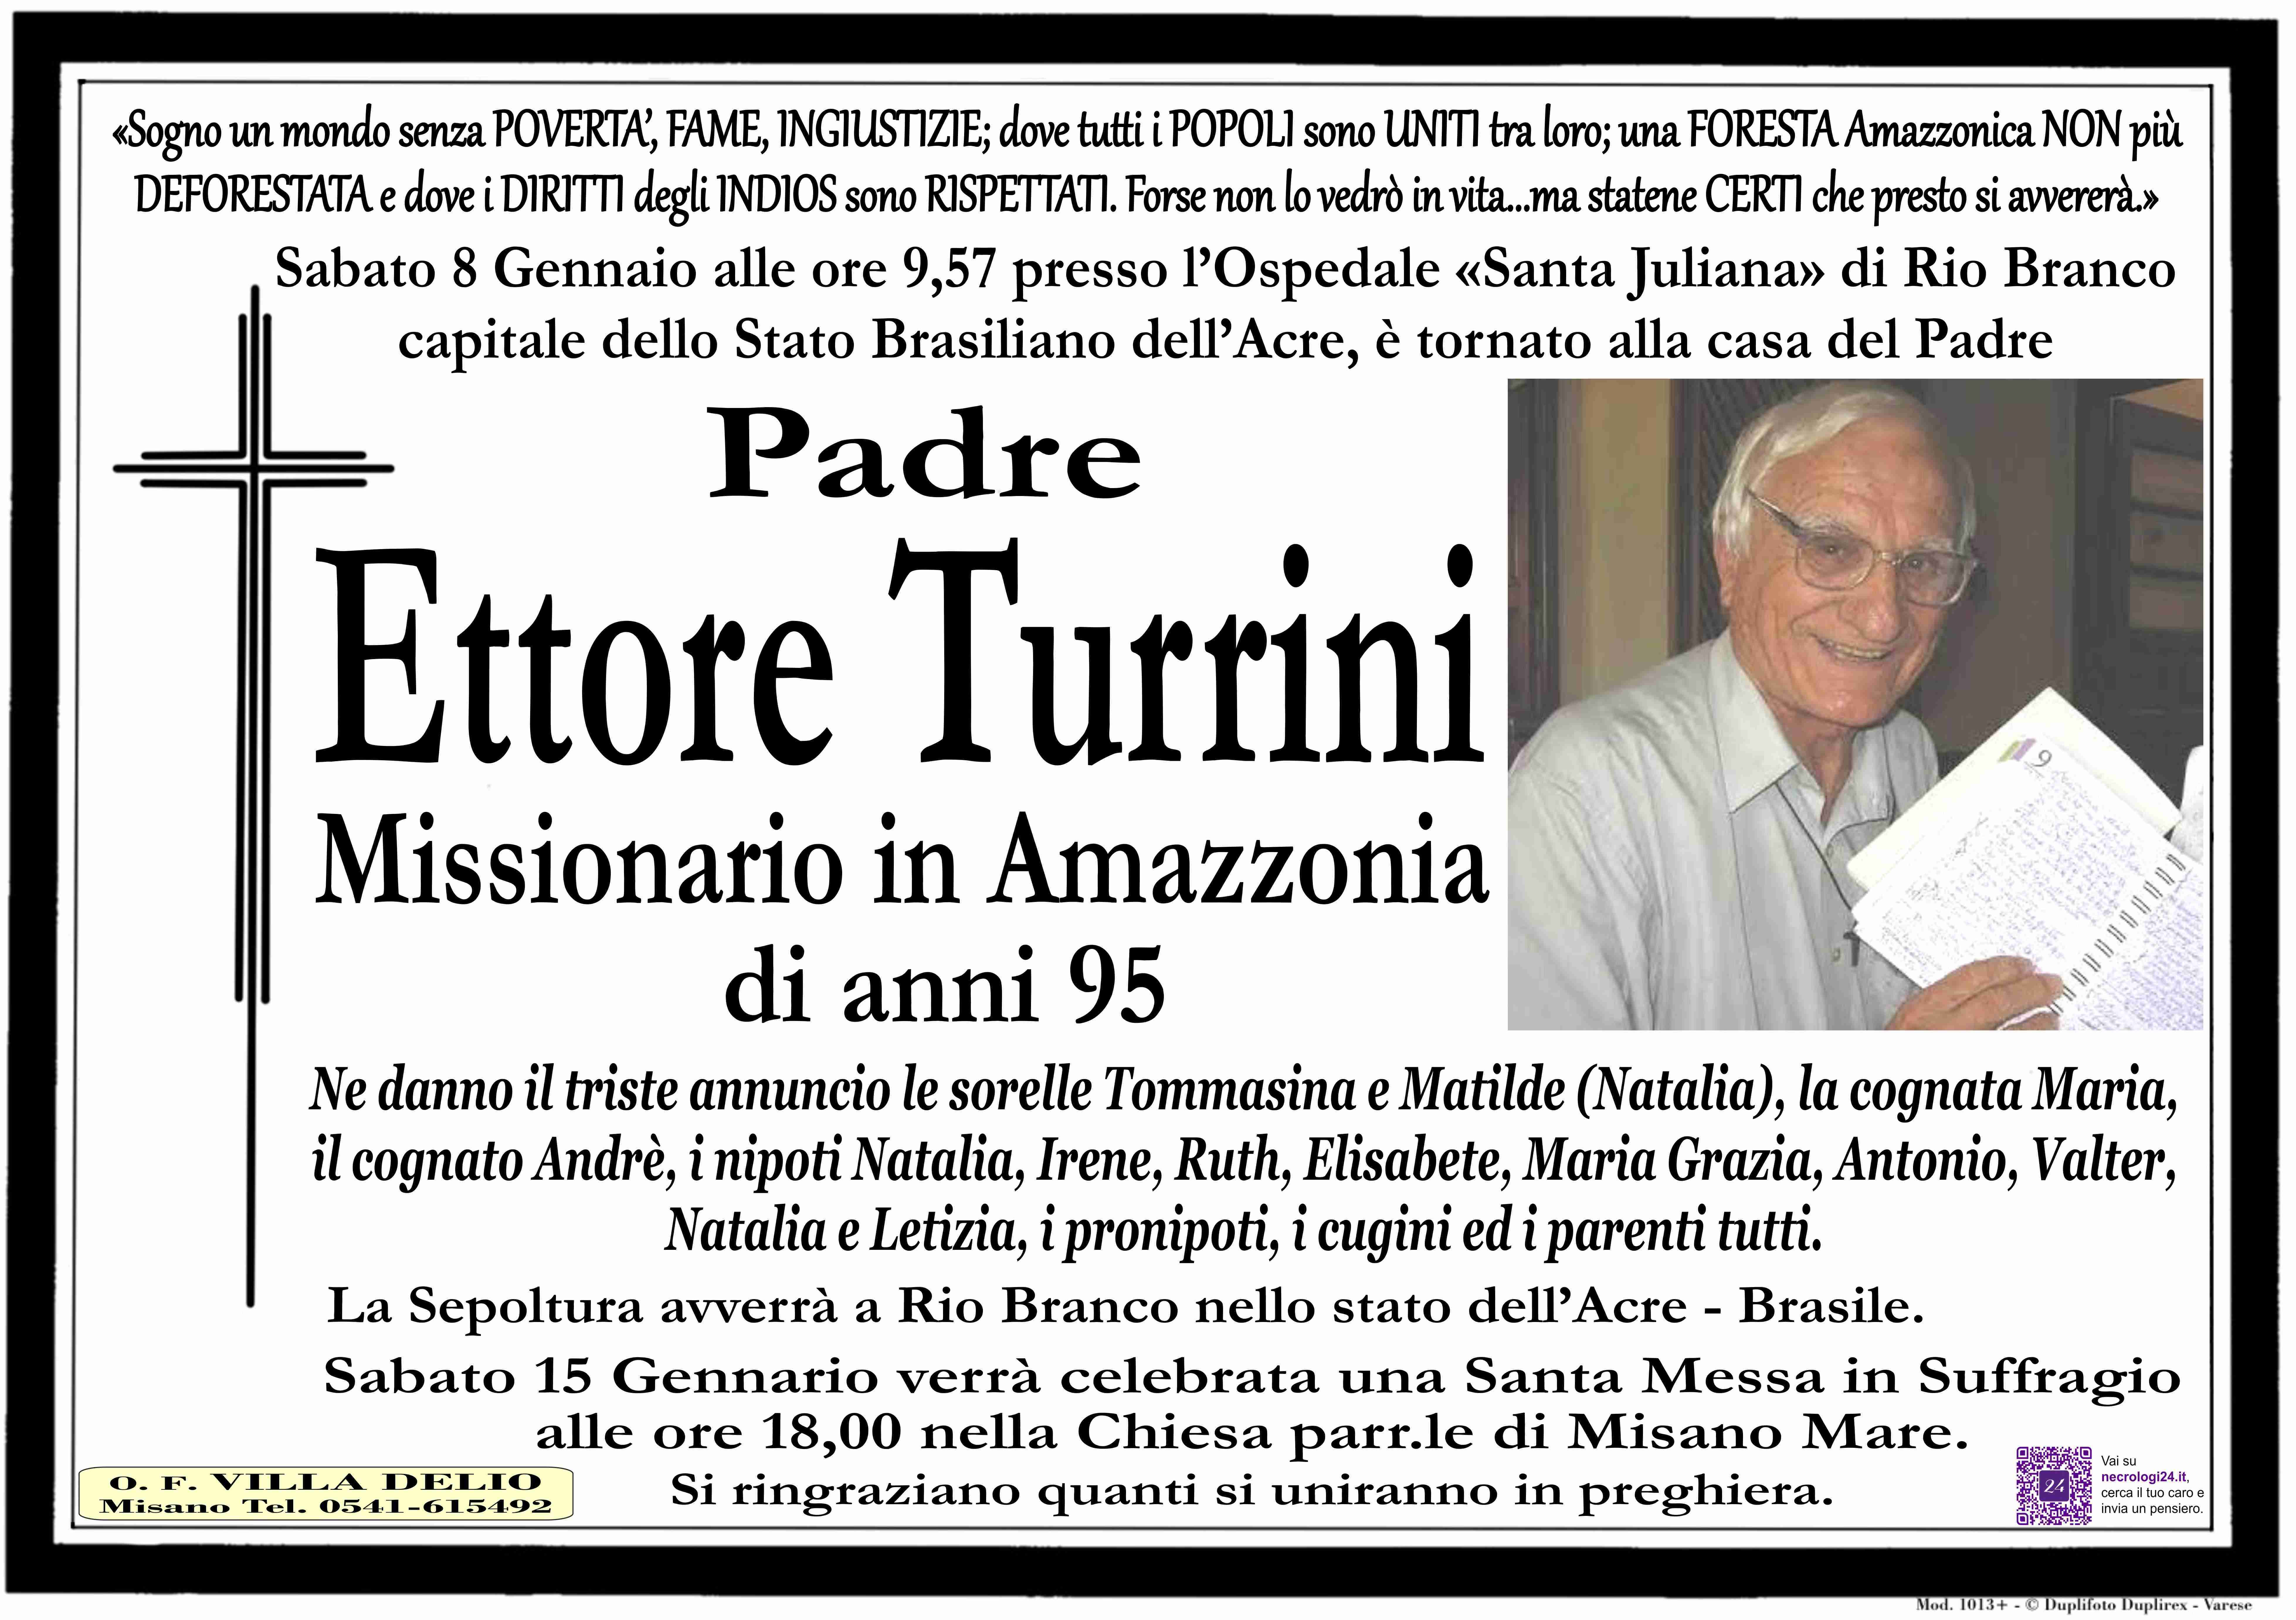 Padre Ettore Turrini